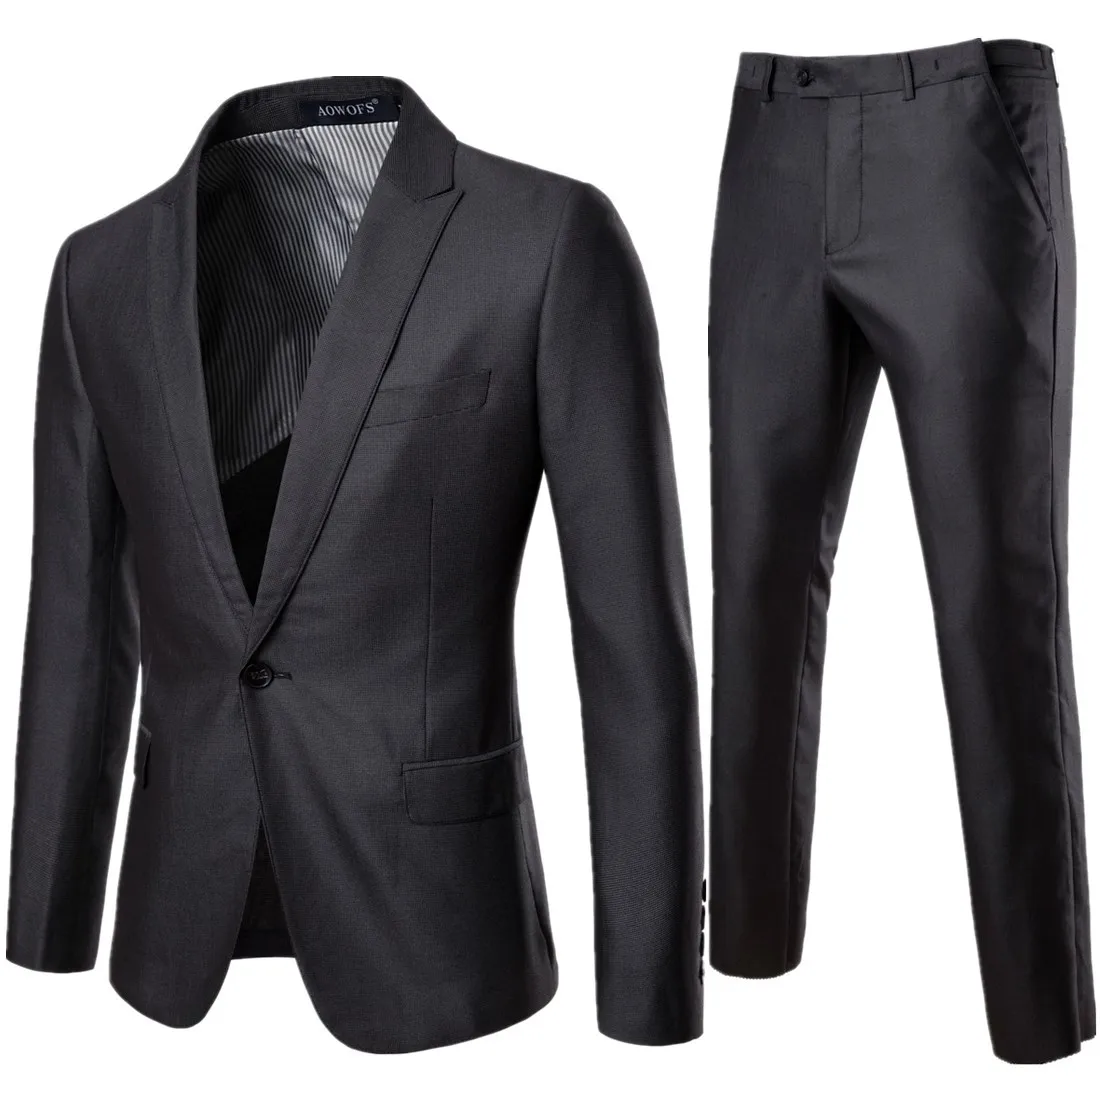 XF013 Для мужчин 2019 одежда S-5XL Новый Хорошее качество Бизнес костюм для досуга 2 шт. жениха шафером Свадебный костюм Для мужчин костюмы